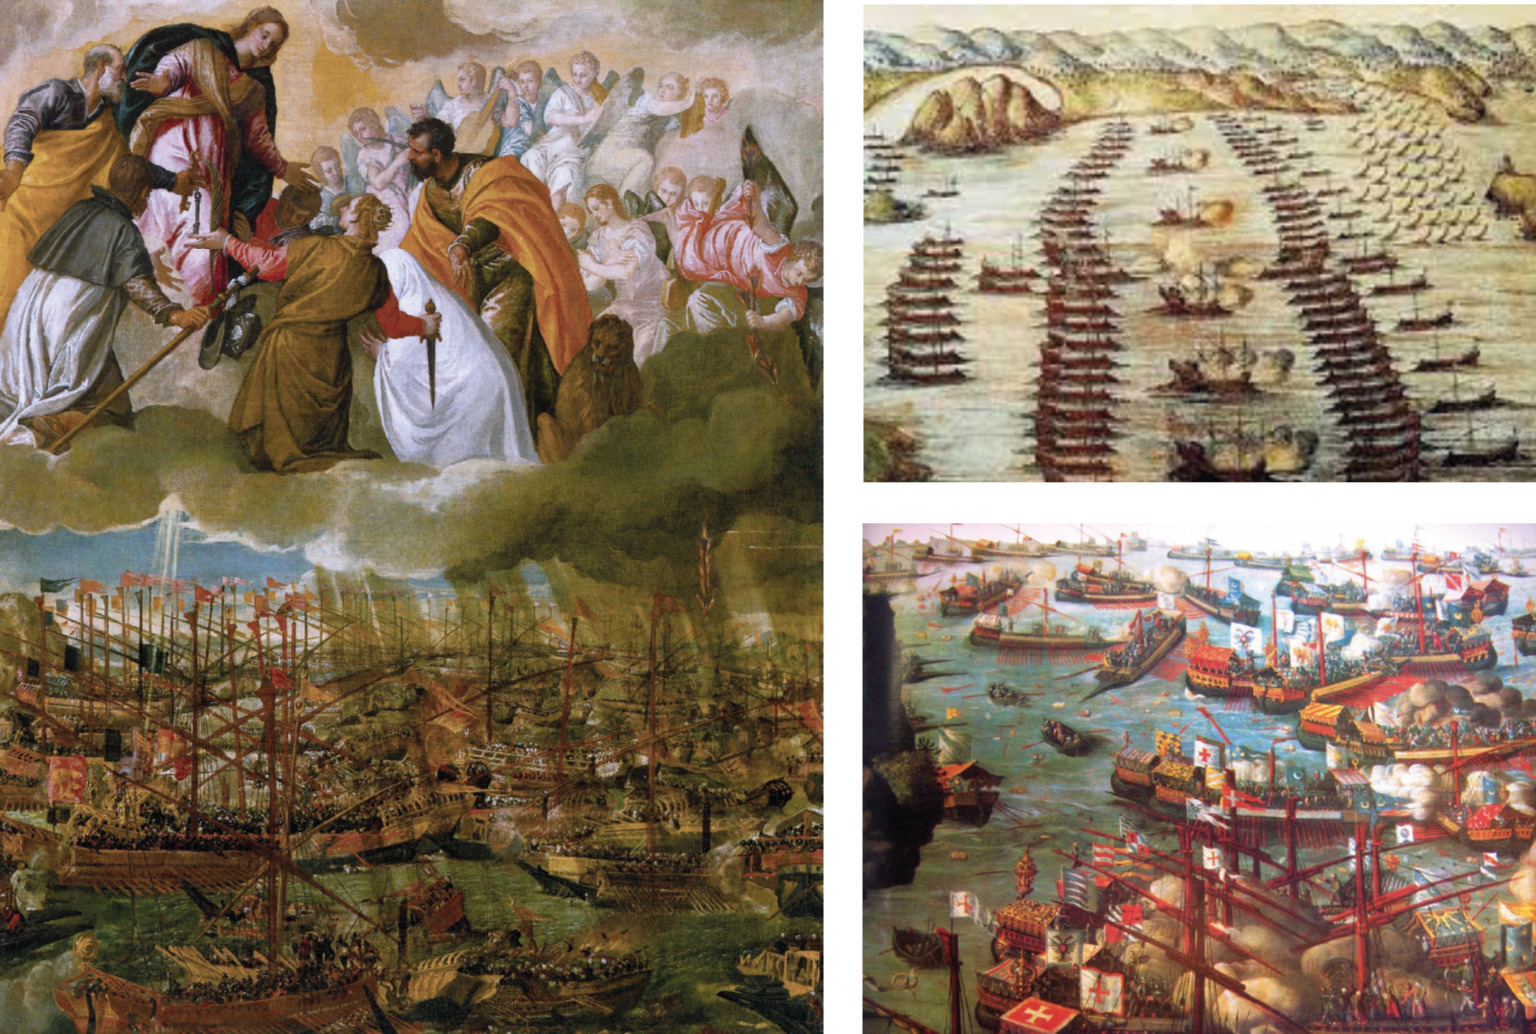 La battaglia di Lepanto, celebrata in tutte le corti europee con dipinti e monumenti, entra nel mito, simbolo del sollievo contro la minaccia del terrore